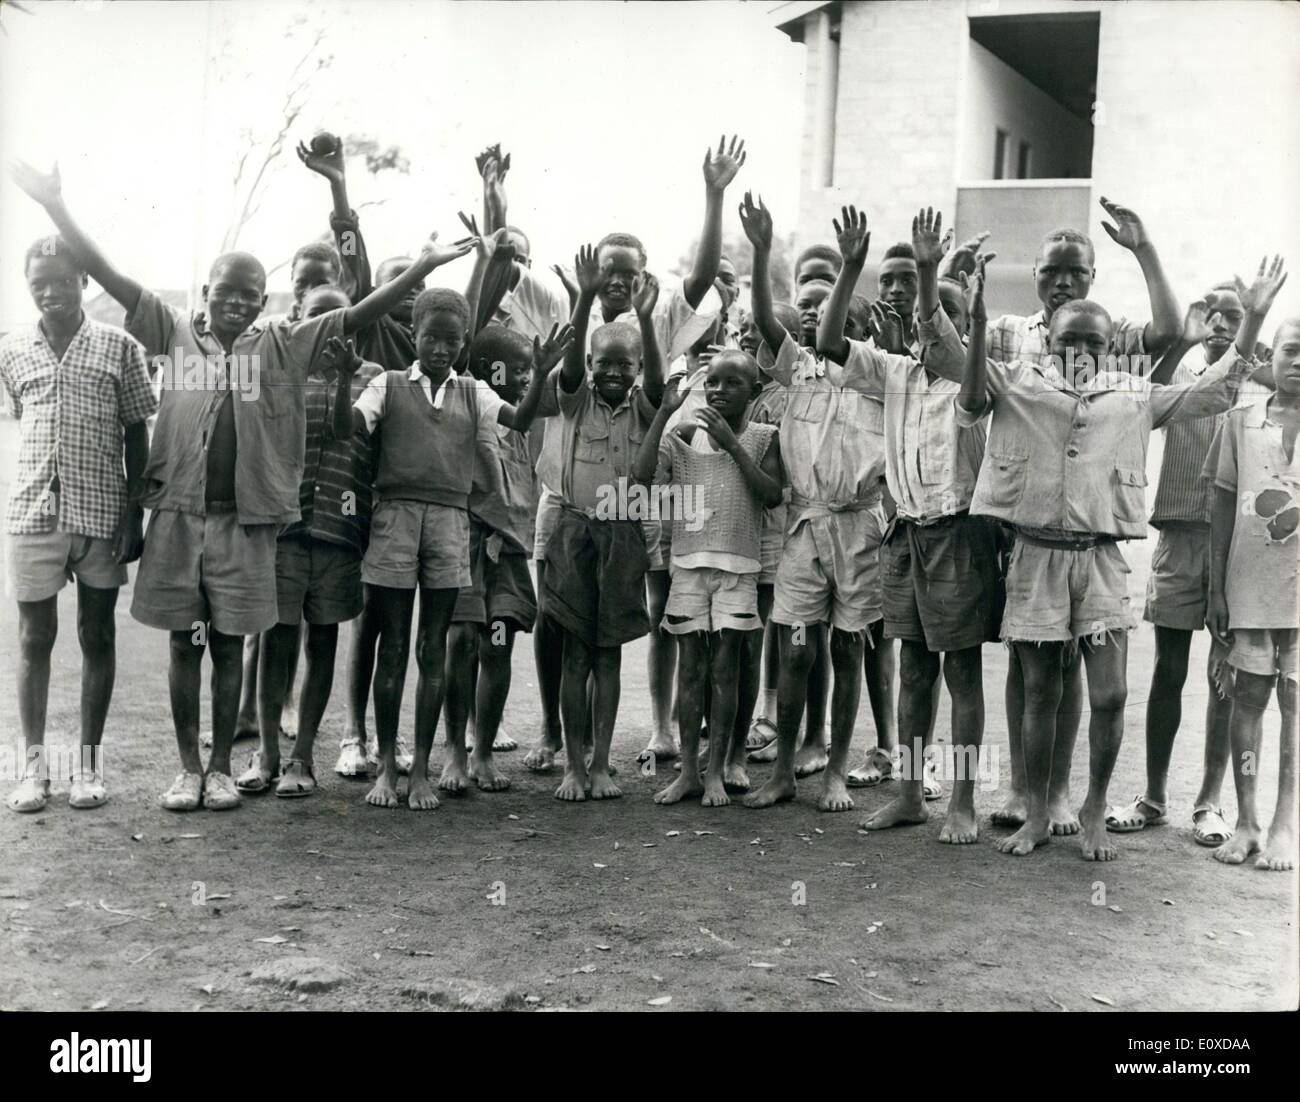 05 mai 1966 - enfants esclaves sauvés des camps de travail : Trente-deux enfants, qui il y a quelques années ont été arrachés à leurs villages pour travail forcé Dhikuli dans les forêts tanzaniennes, sont arrivés à Nairobi après avoir été rapatrié à la demande du gouvernement du Kenya, et sont en voie d'être réunis avec leurs parents, frères et sœurs. L'âge varie de 11 à 19 ans, les garçons sont arrivés à Nairobi à la fin de semaine après avoir été traqué par les autorités tanzaniennes qui les a découverts dans un ''camp de travail'' près d'Arusha Banque D'Images